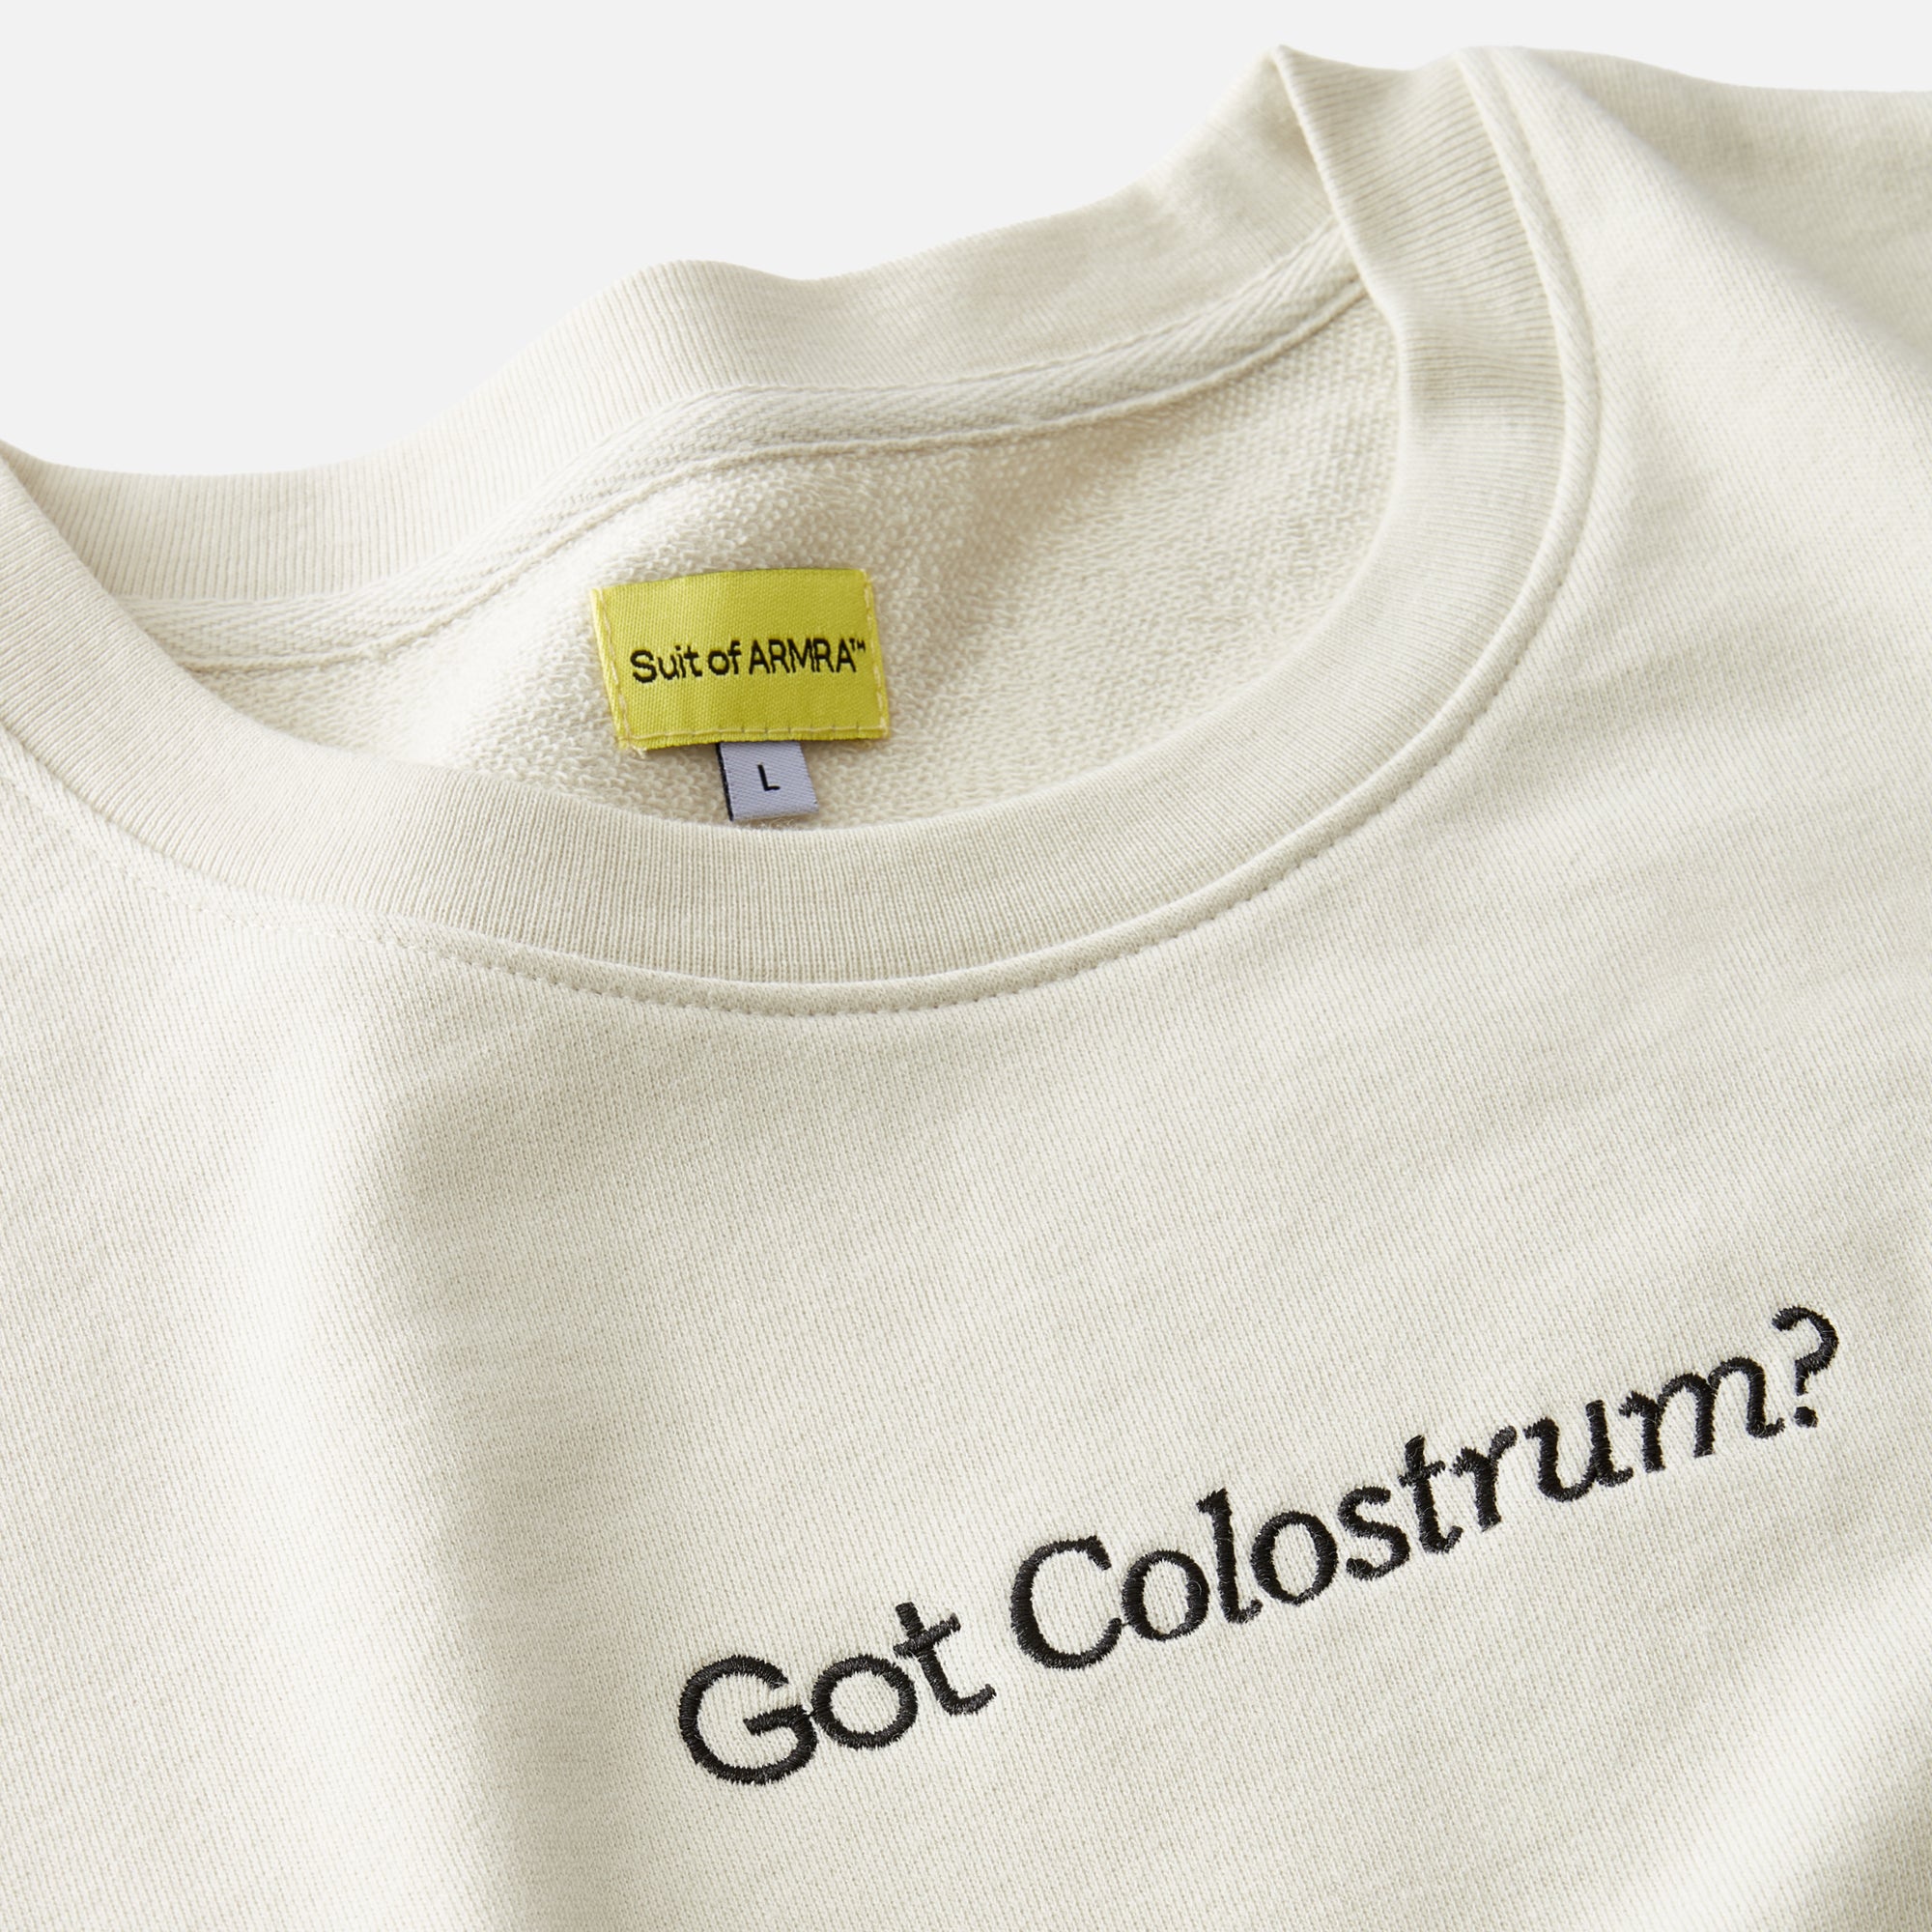 Cream Sweatshirt with "Got Colostrum?" embroidered text